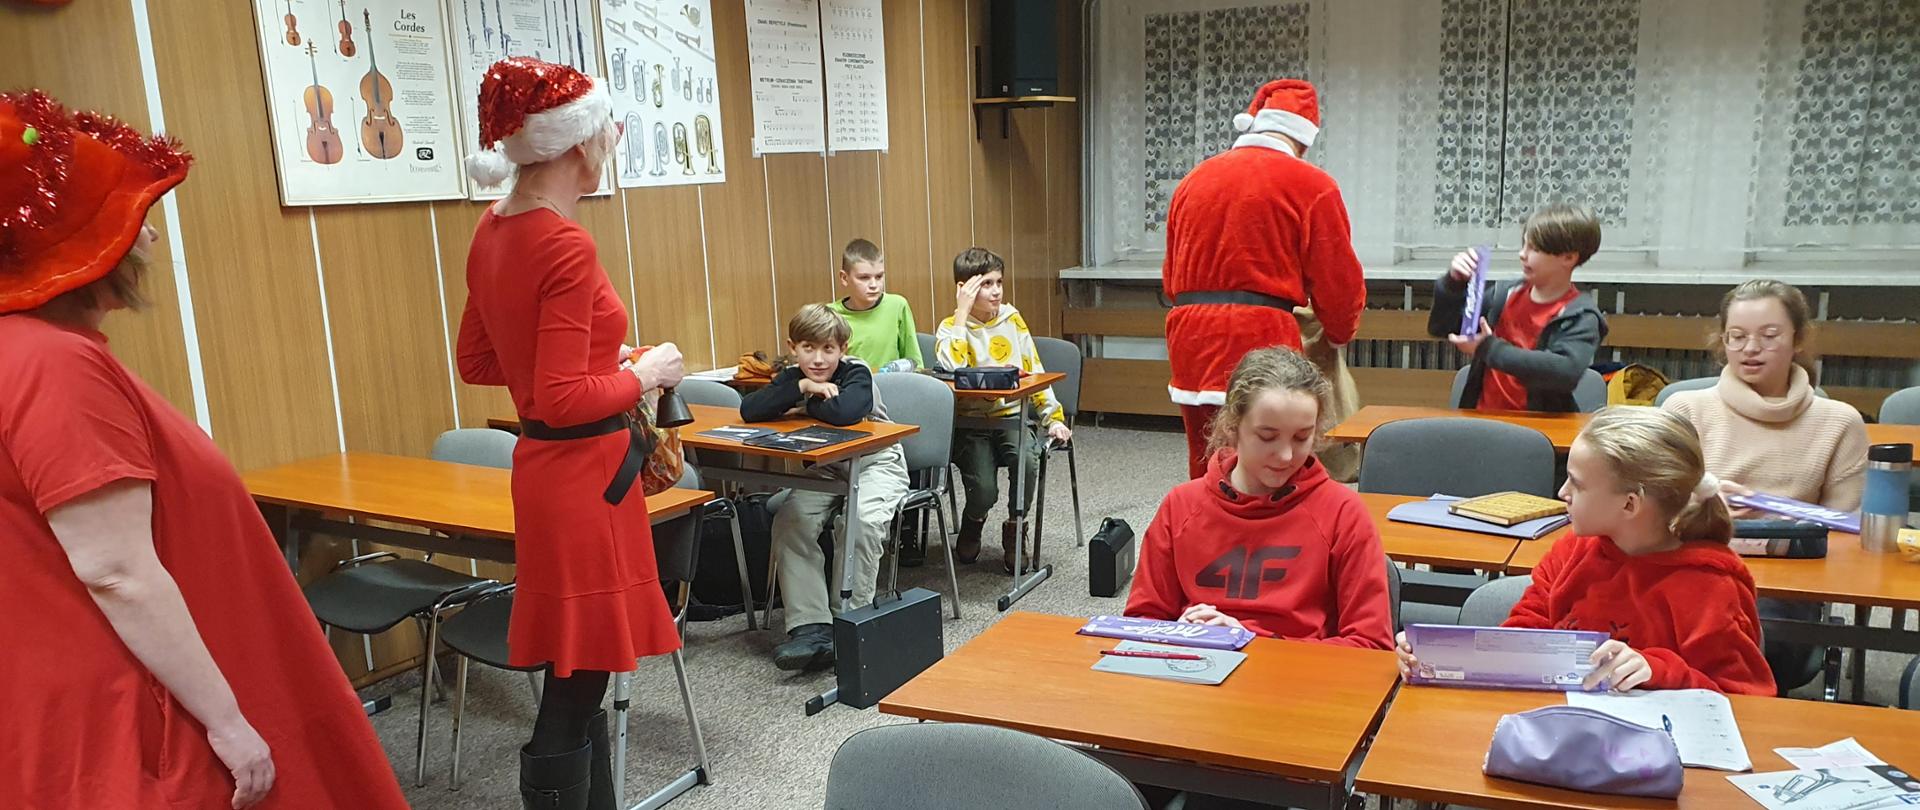 Mężczyzna w stroju Mikołaja i dwie kobiety w czerwonych strojach elfów rozdają dzieciom siedzącym w ławkach w sali lekcyjnej słodycze.